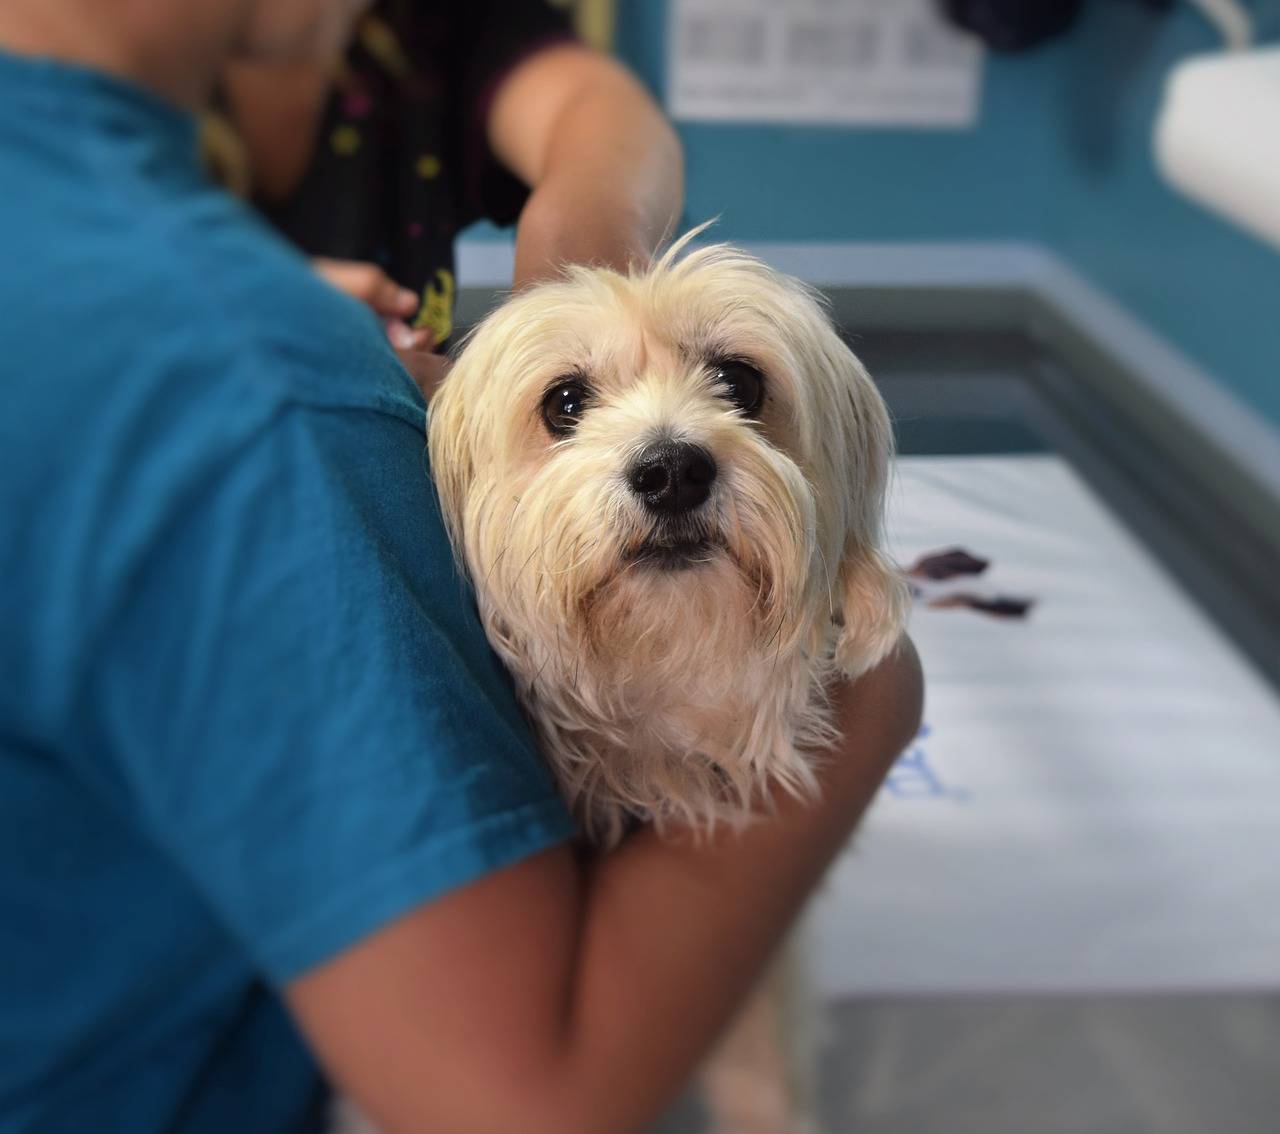 Gebärmutterentzündung Behandlung - Hund beim Tierarzt auf dem Bild